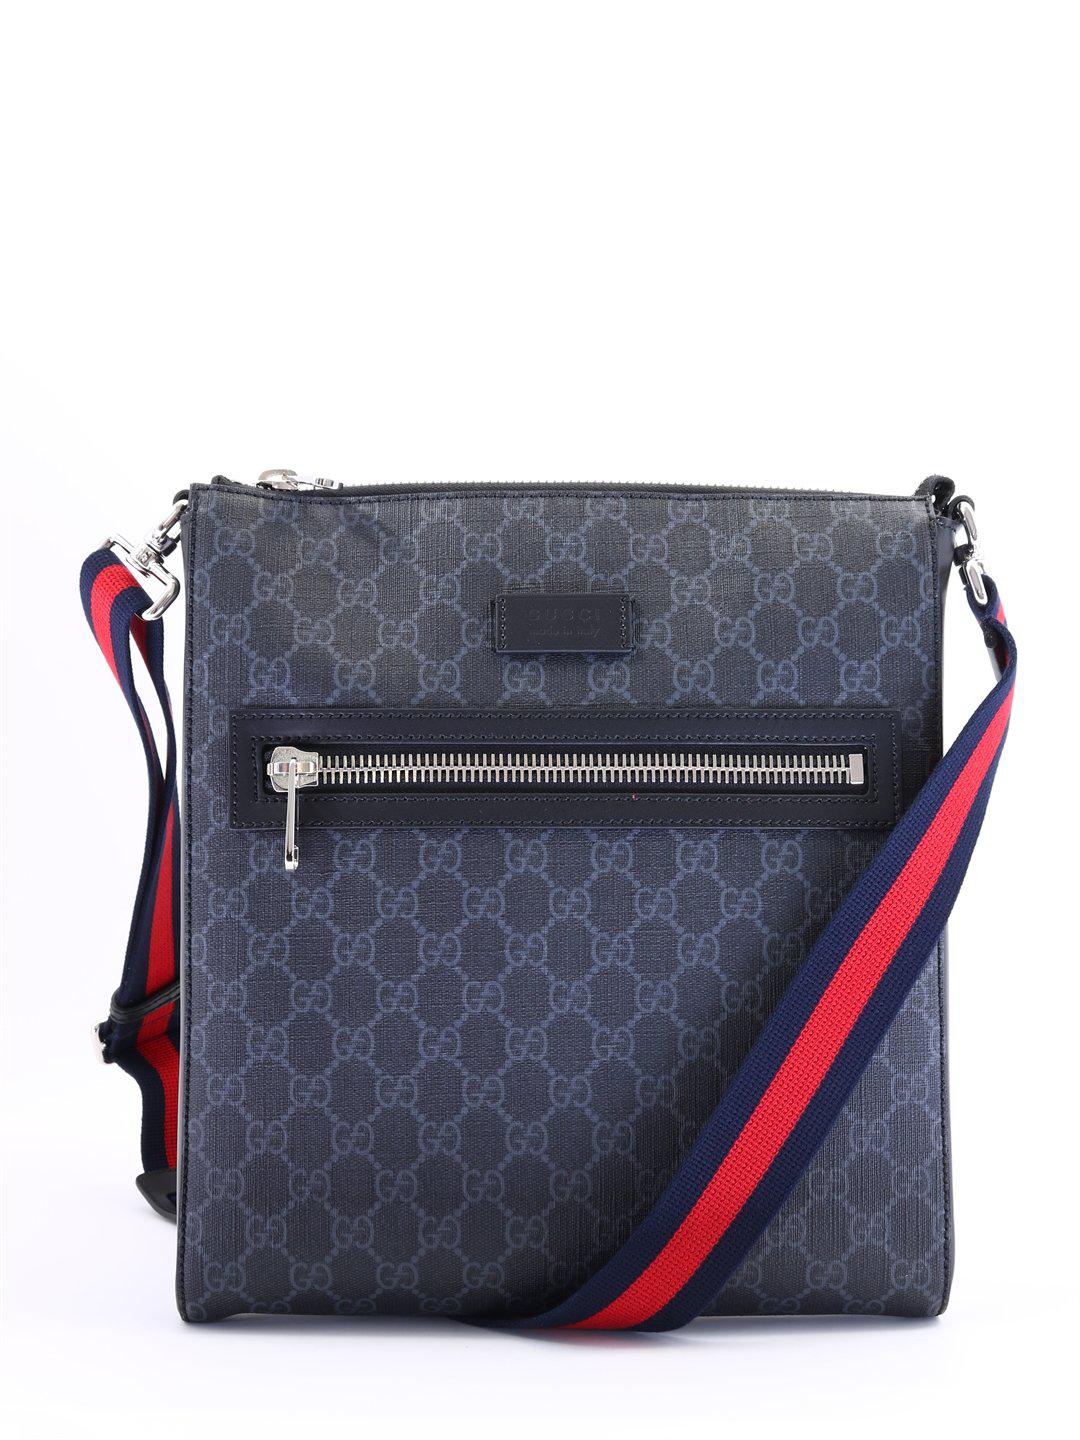 Lyst - Gucci GG Supreme Web Strap Messenger Bag in Black for Men